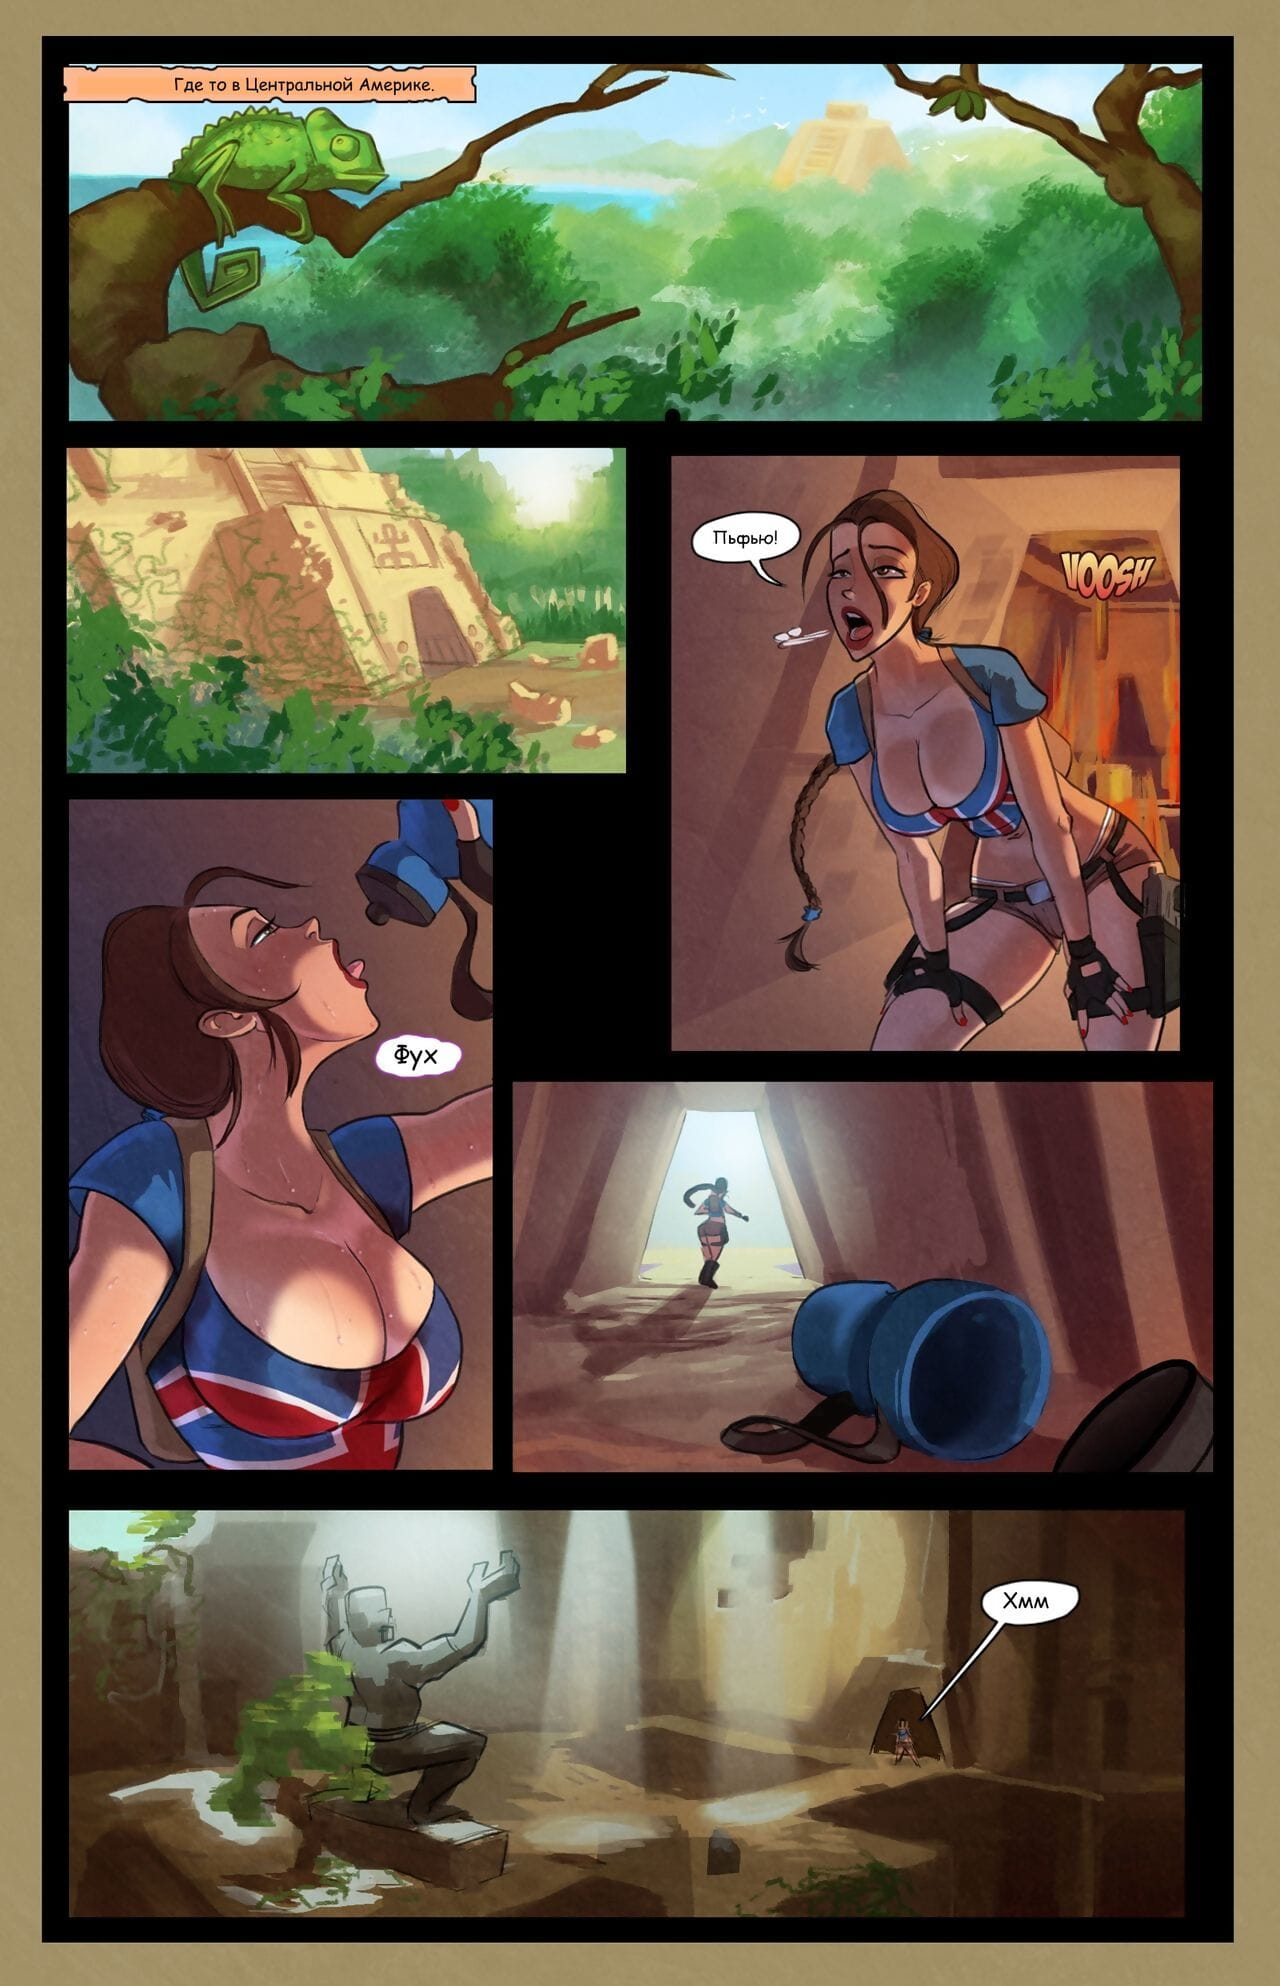 thedirtymonkey Lara Croft e o guardião de prazer túmulo raider Russo qbert